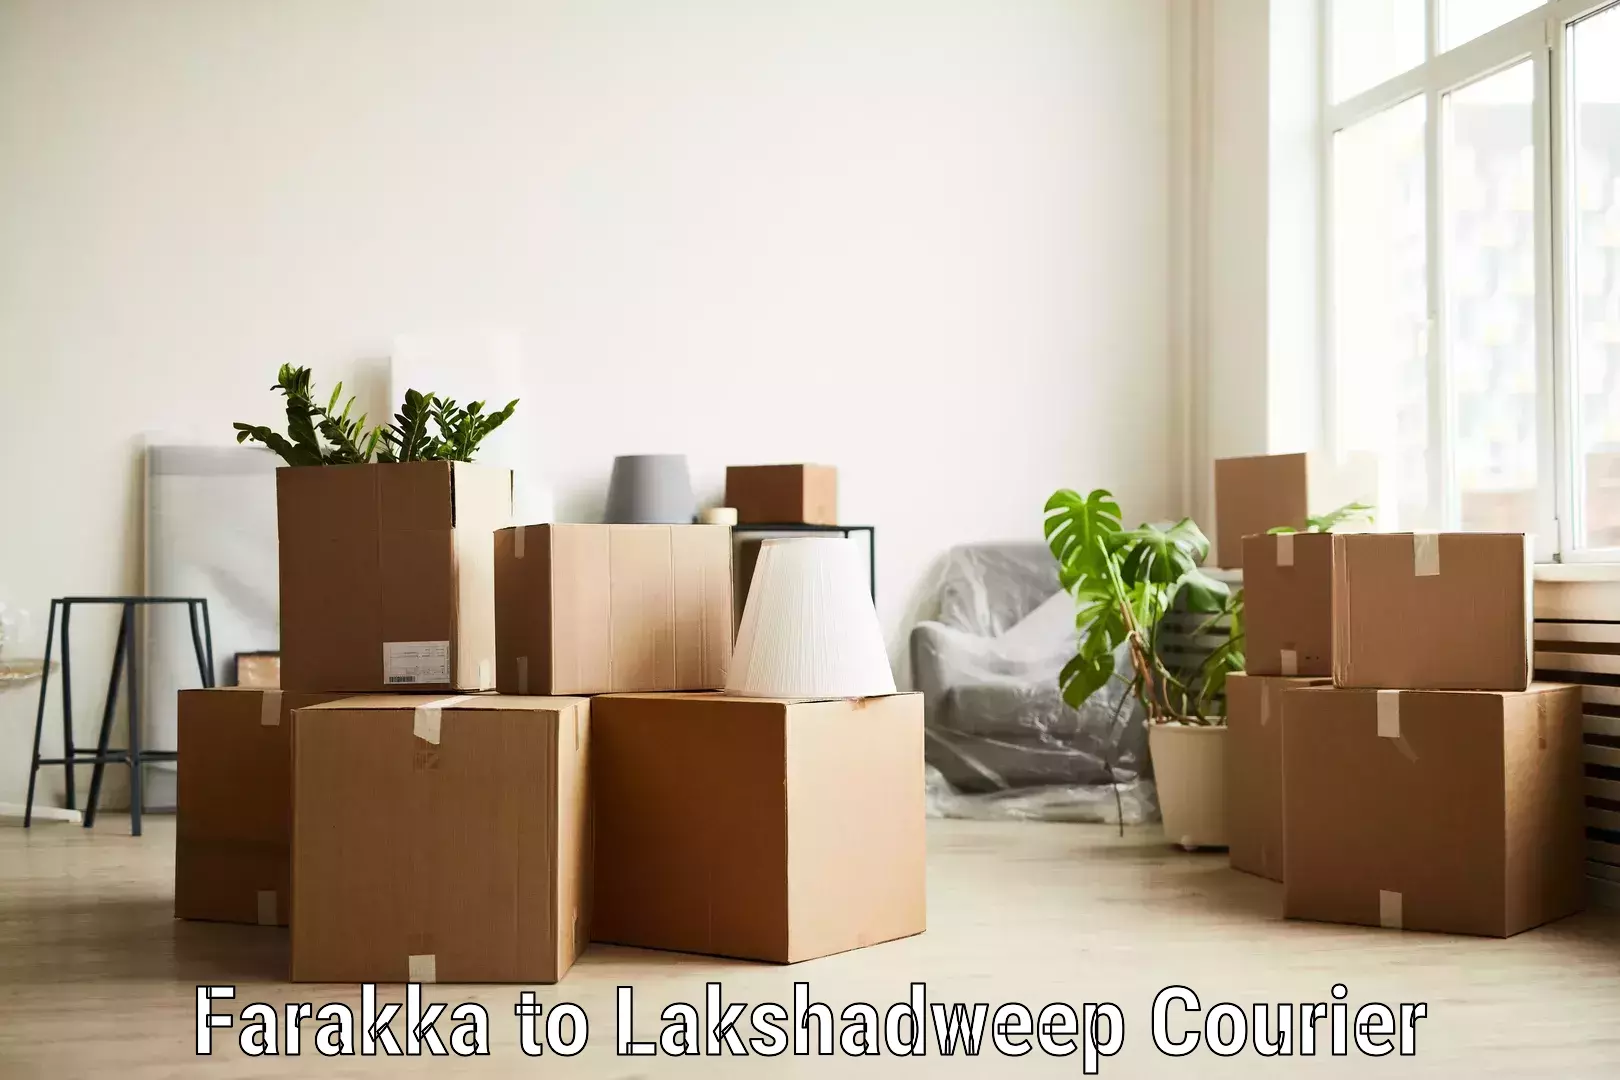 Customer-focused courier Farakka to Lakshadweep